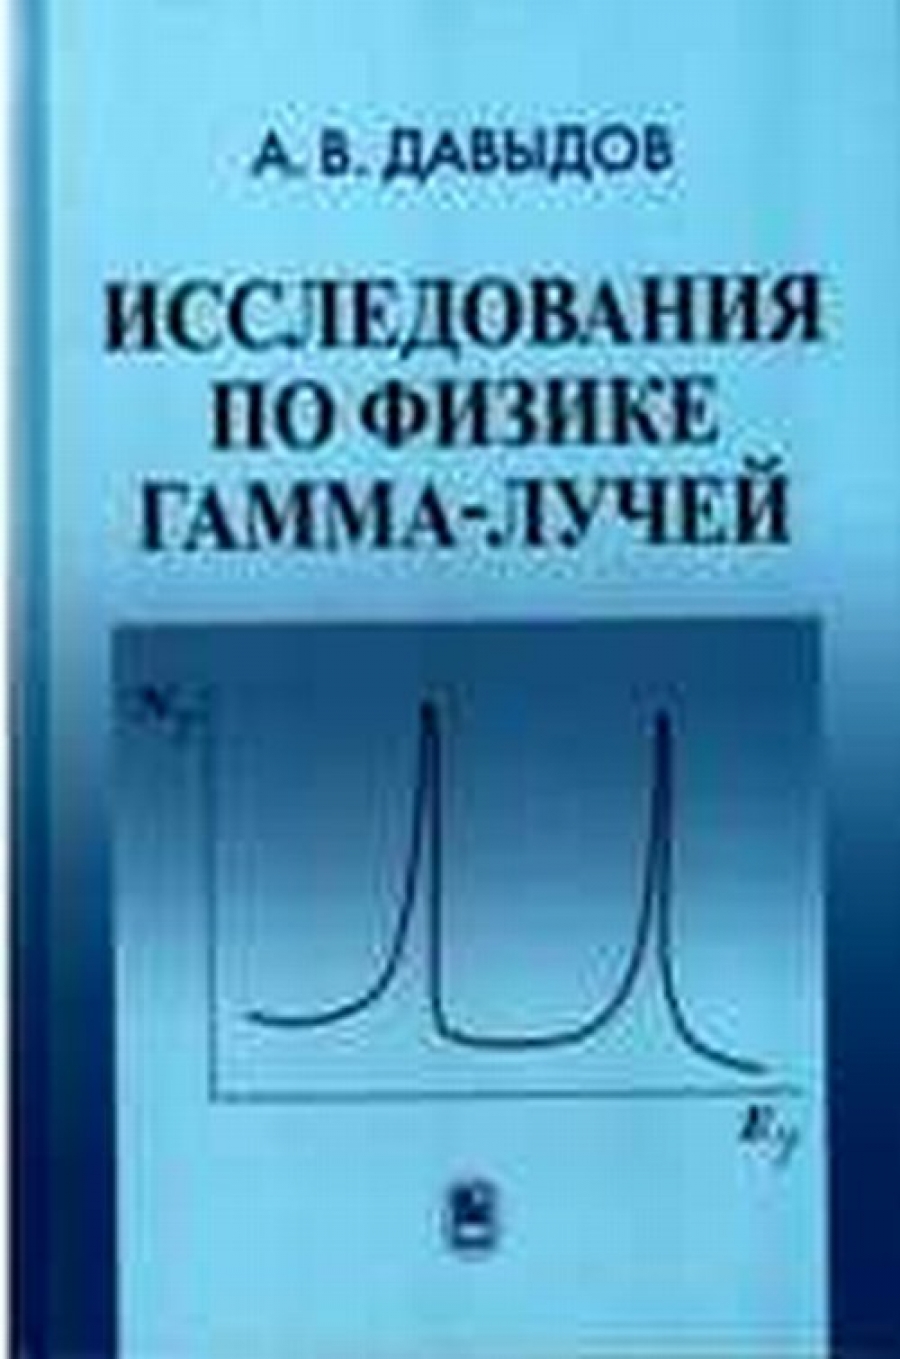 Давыдов А.В. Исследования по физике гамма-лучей 